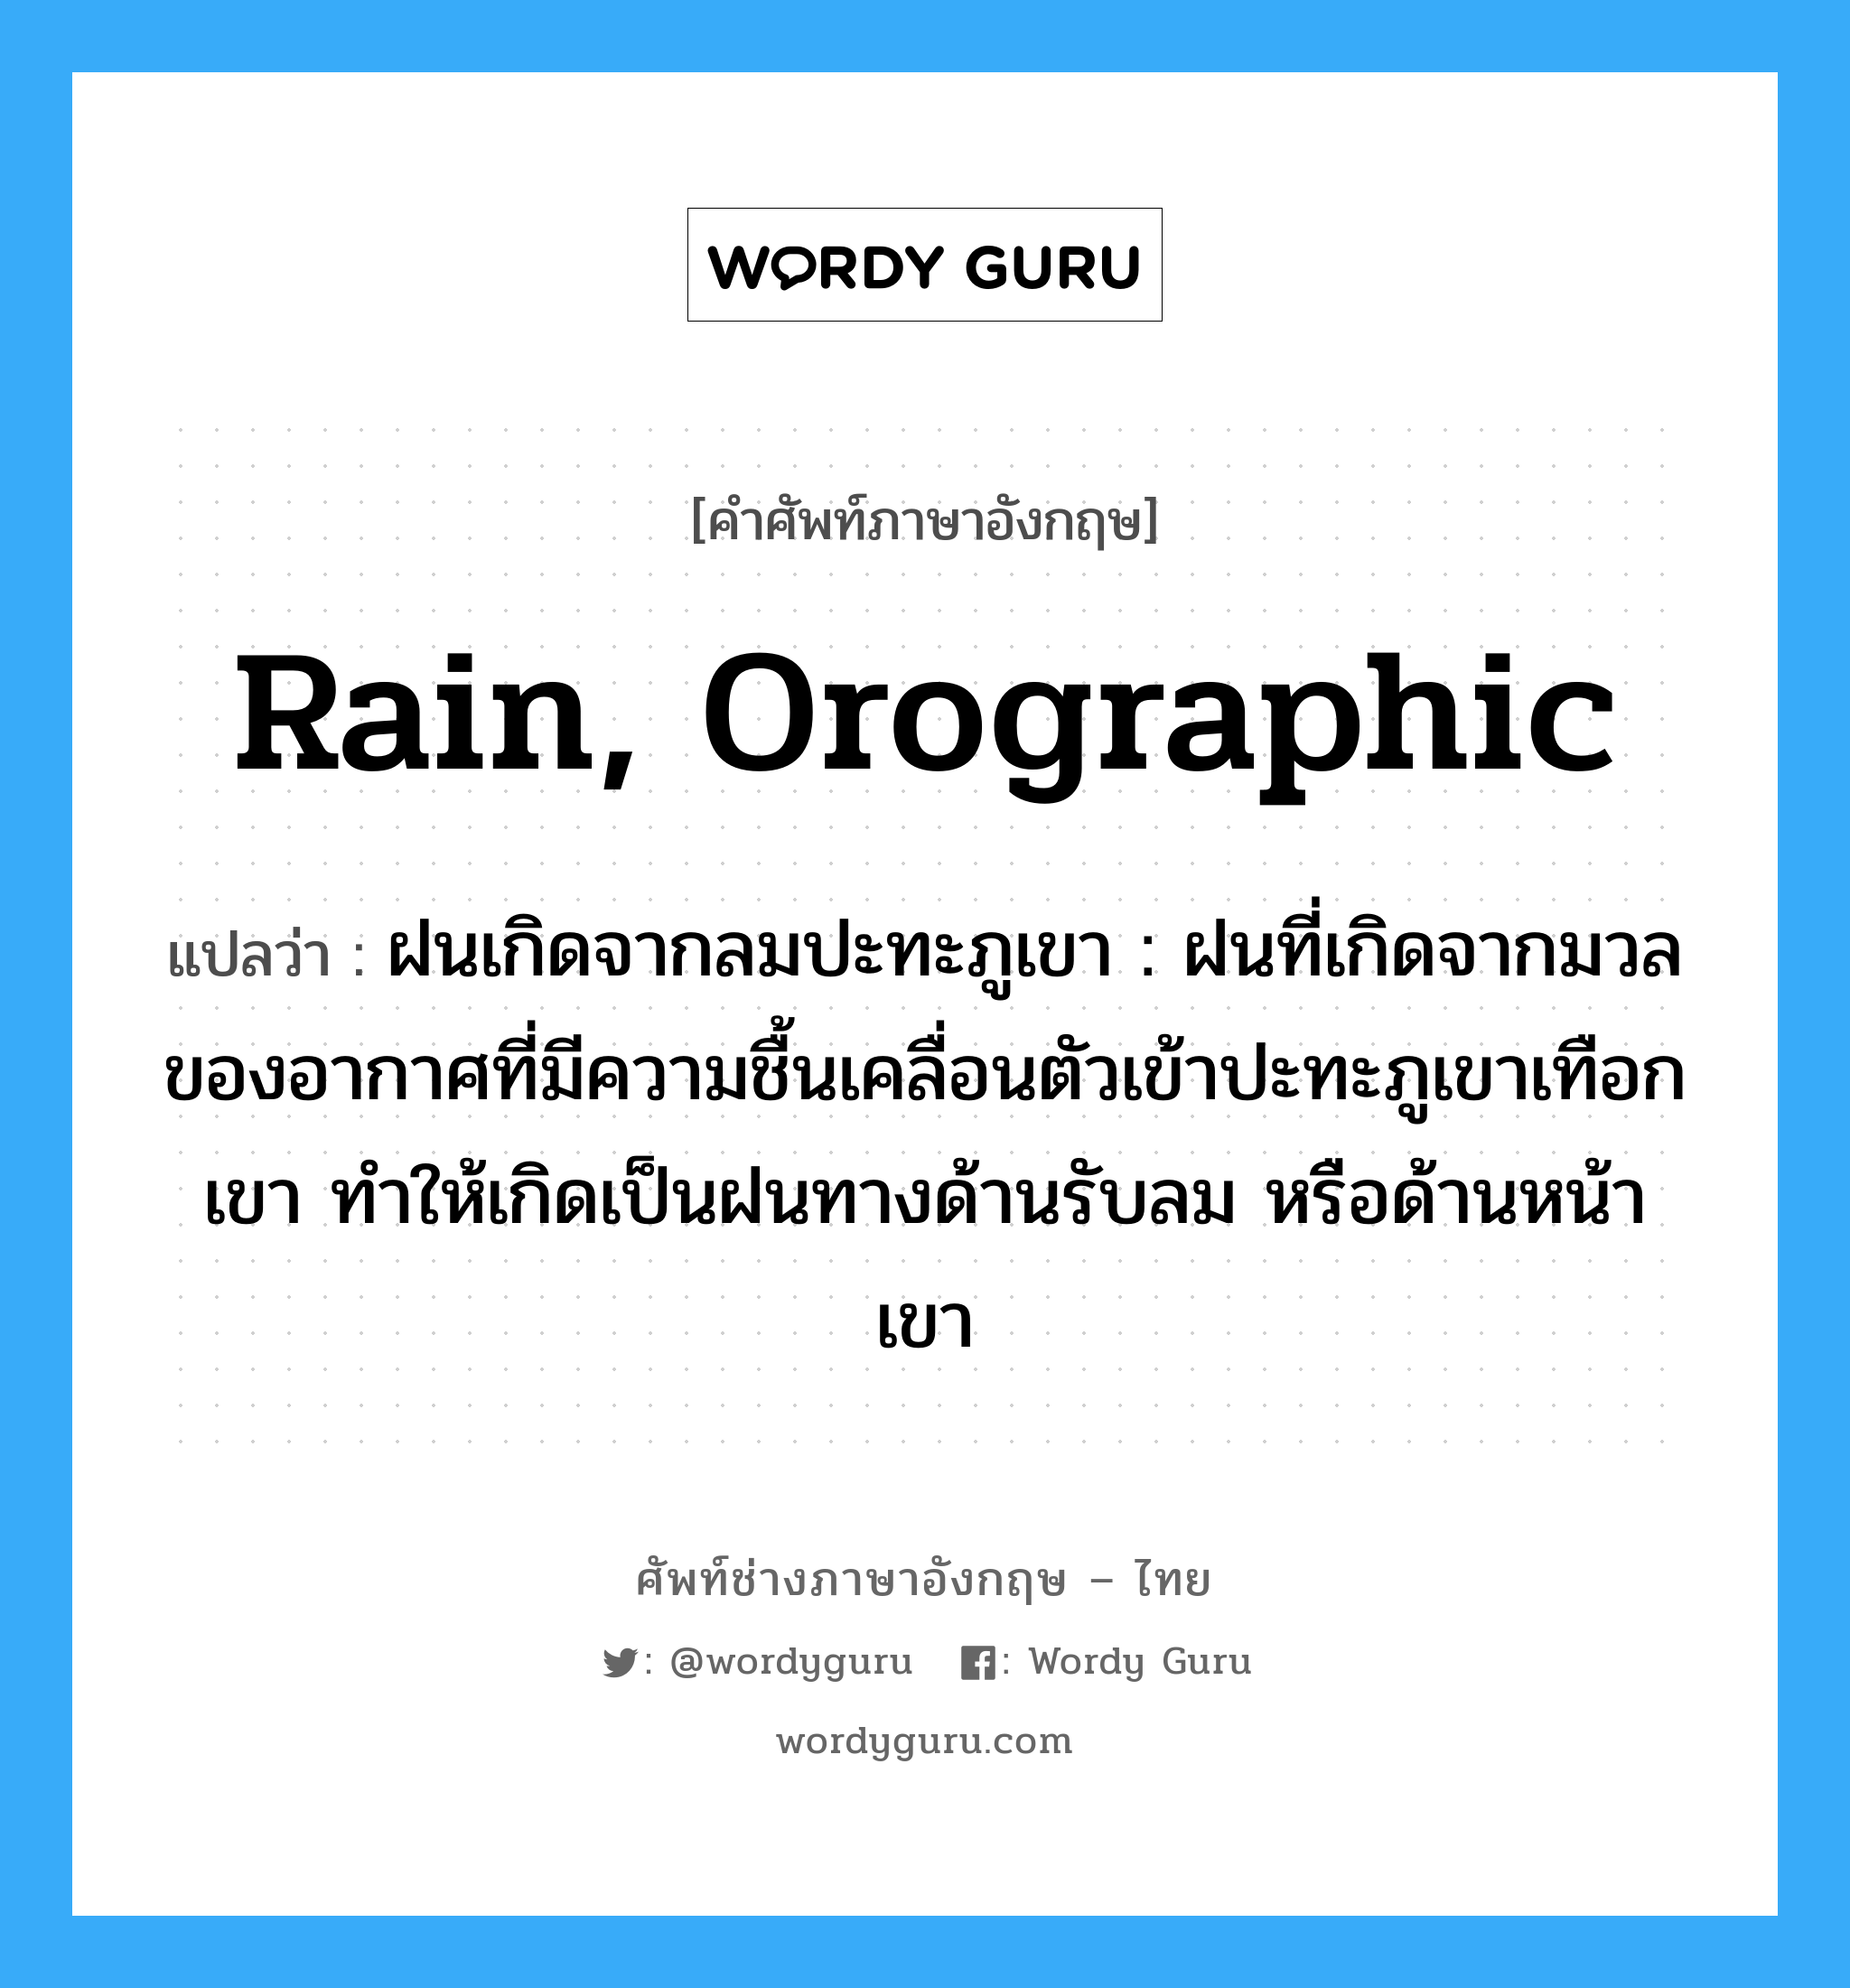 rain, orographic แปลว่า?, คำศัพท์ช่างภาษาอังกฤษ - ไทย rain, orographic คำศัพท์ภาษาอังกฤษ rain, orographic แปลว่า ฝนเกิดจากลมปะทะภูเขา : ฝนที่เกิดจากมวลของอากาศที่มีความชื้นเคลื่อนตัวเข้าปะทะภูเขาเทือกเขา ทำให้เกิดเป็นฝนทางด้านรับลม หรือด้านหน้าเขา